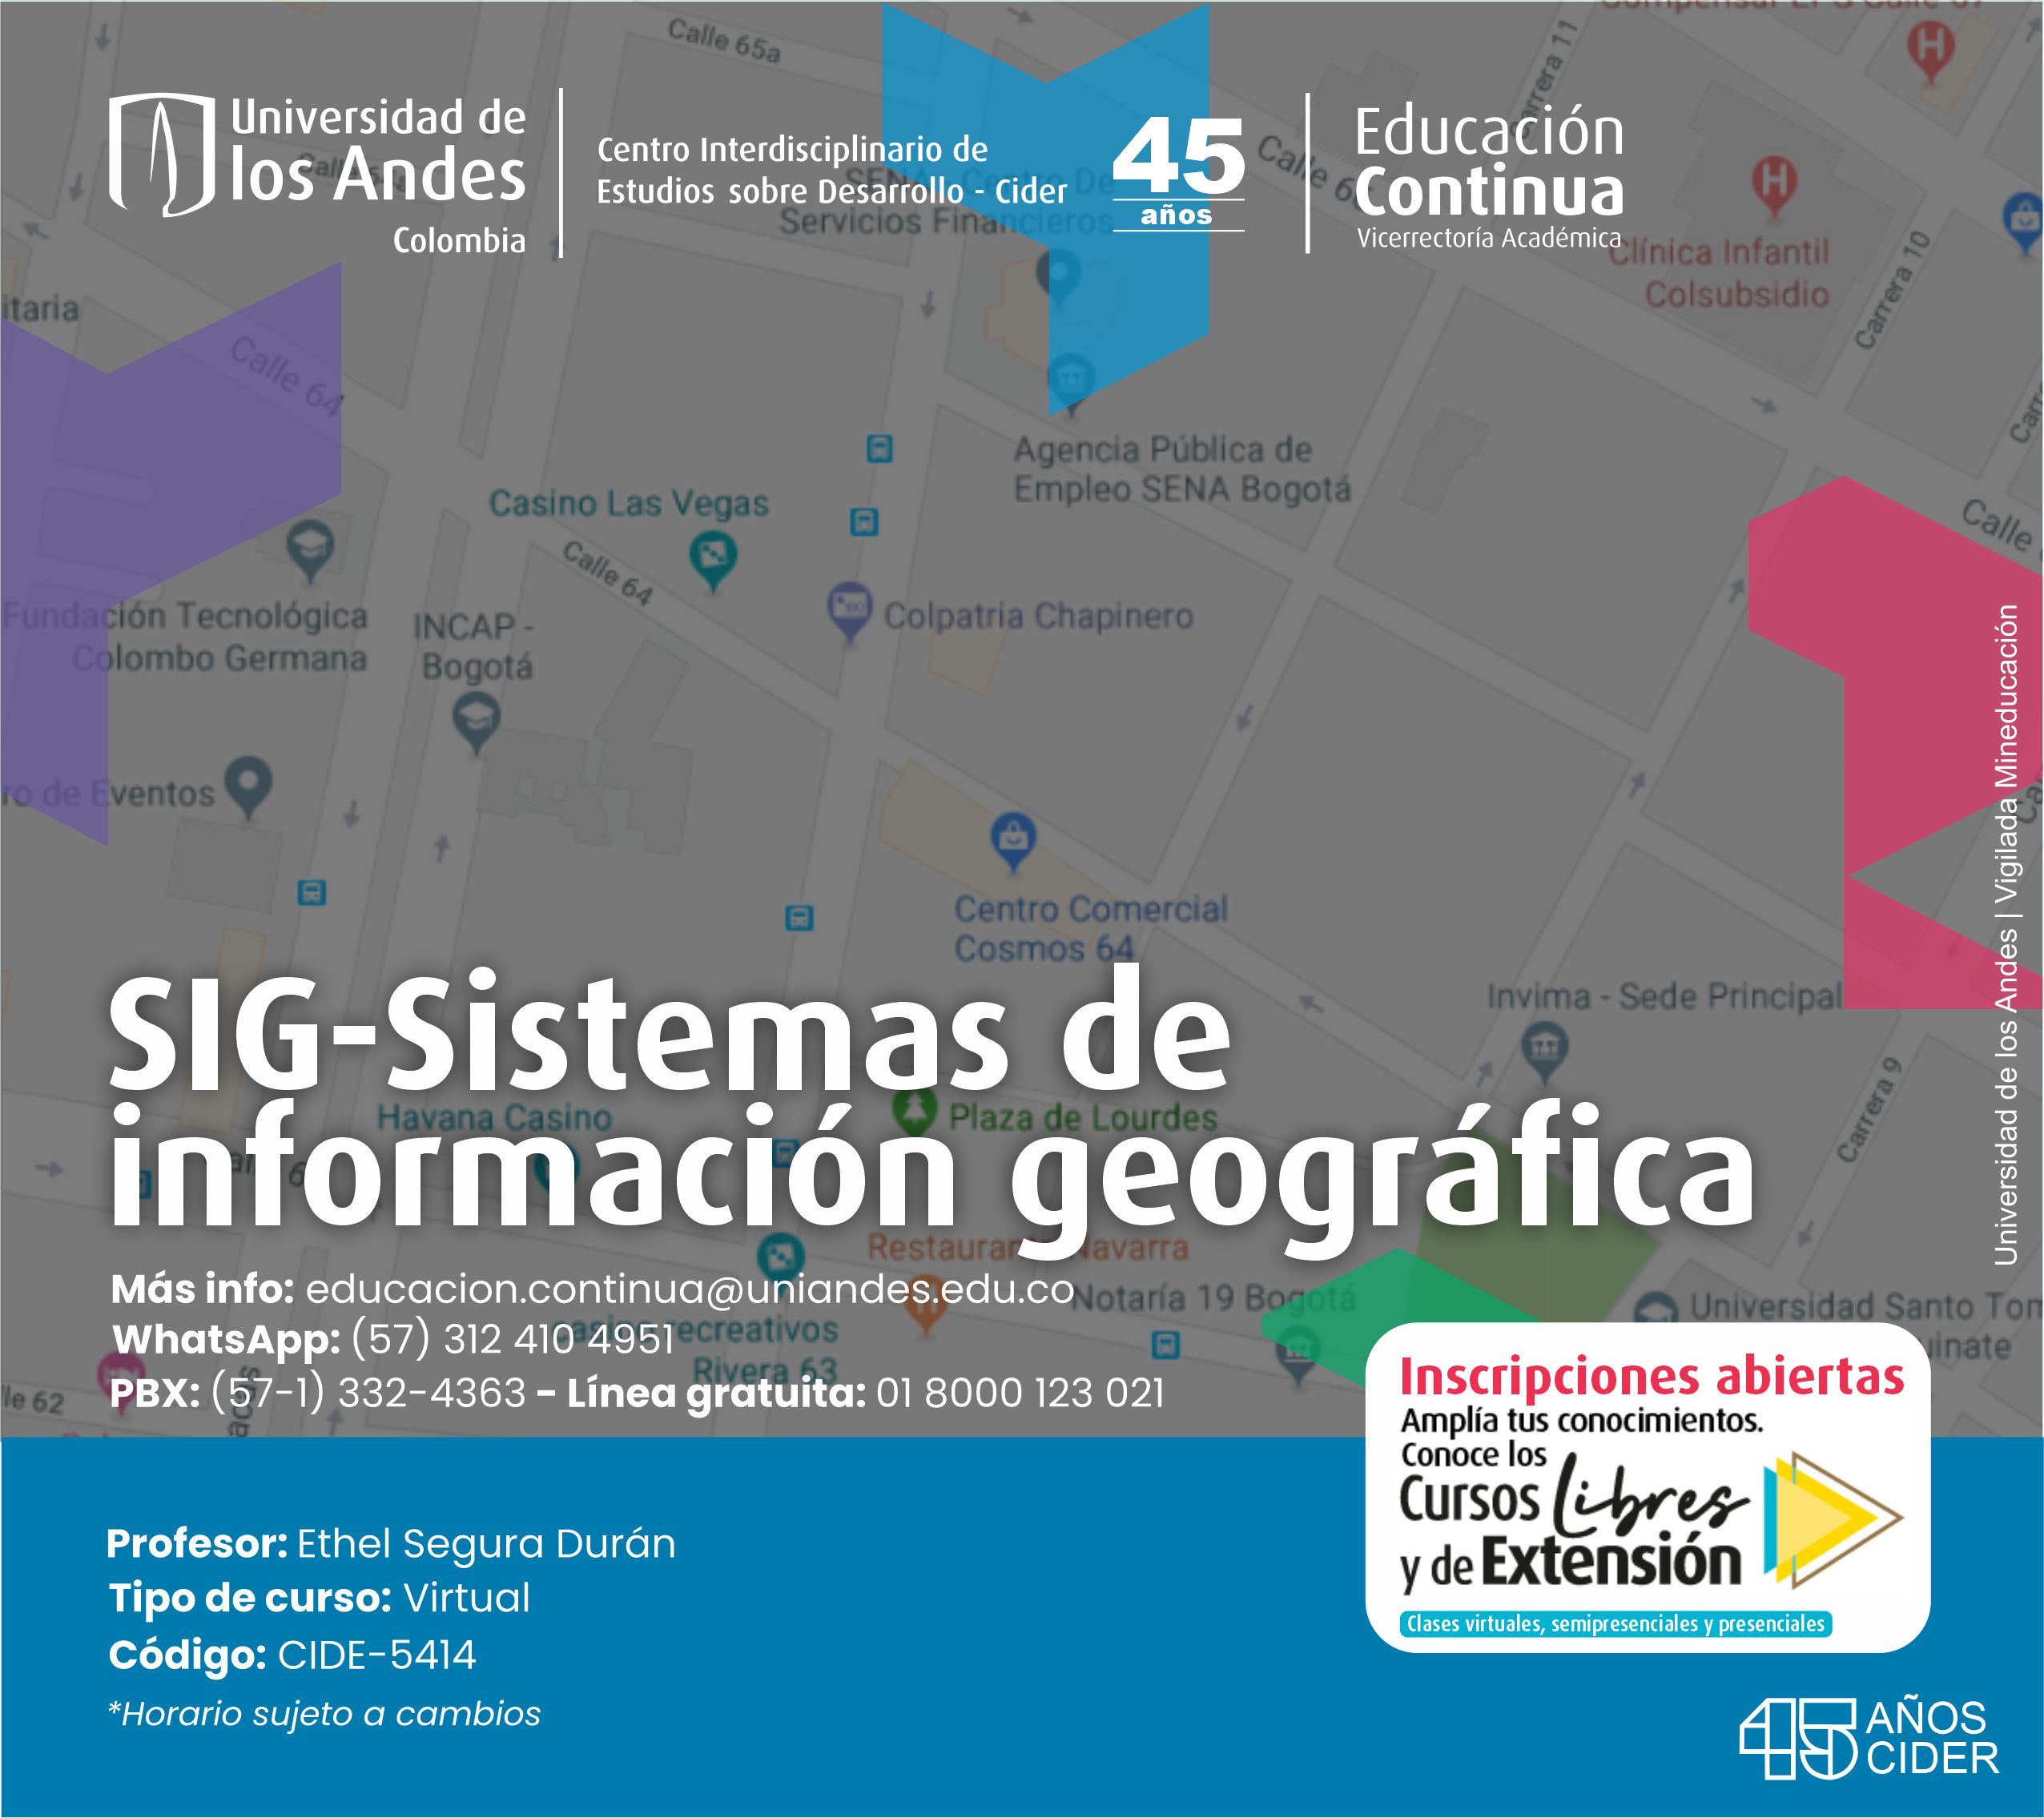 cursos-libres-extensión-SIG sistemas información geográfica- Cider | Uniandes